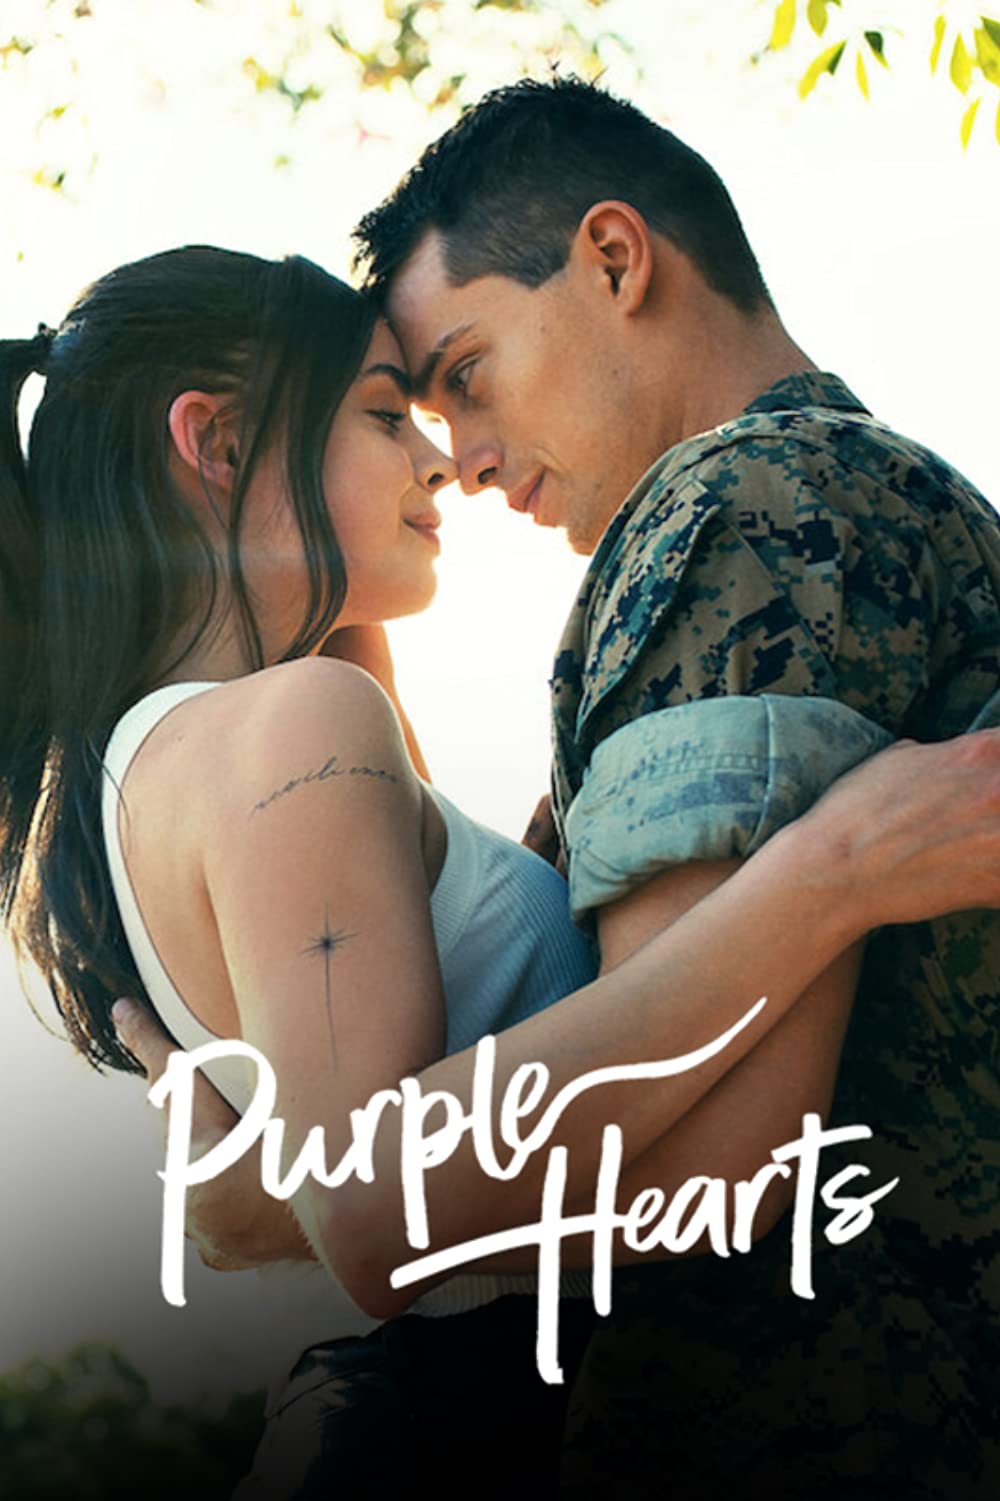 ดูหนังออนไลน์ฟรี Purple Hearts (2022) เพอร์เพิลฮาร์ท หนังเต็มเรื่อง หนังมาสเตอร์ ดูหนังHD ดูหนังออนไลน์ ดูหนังใหม่